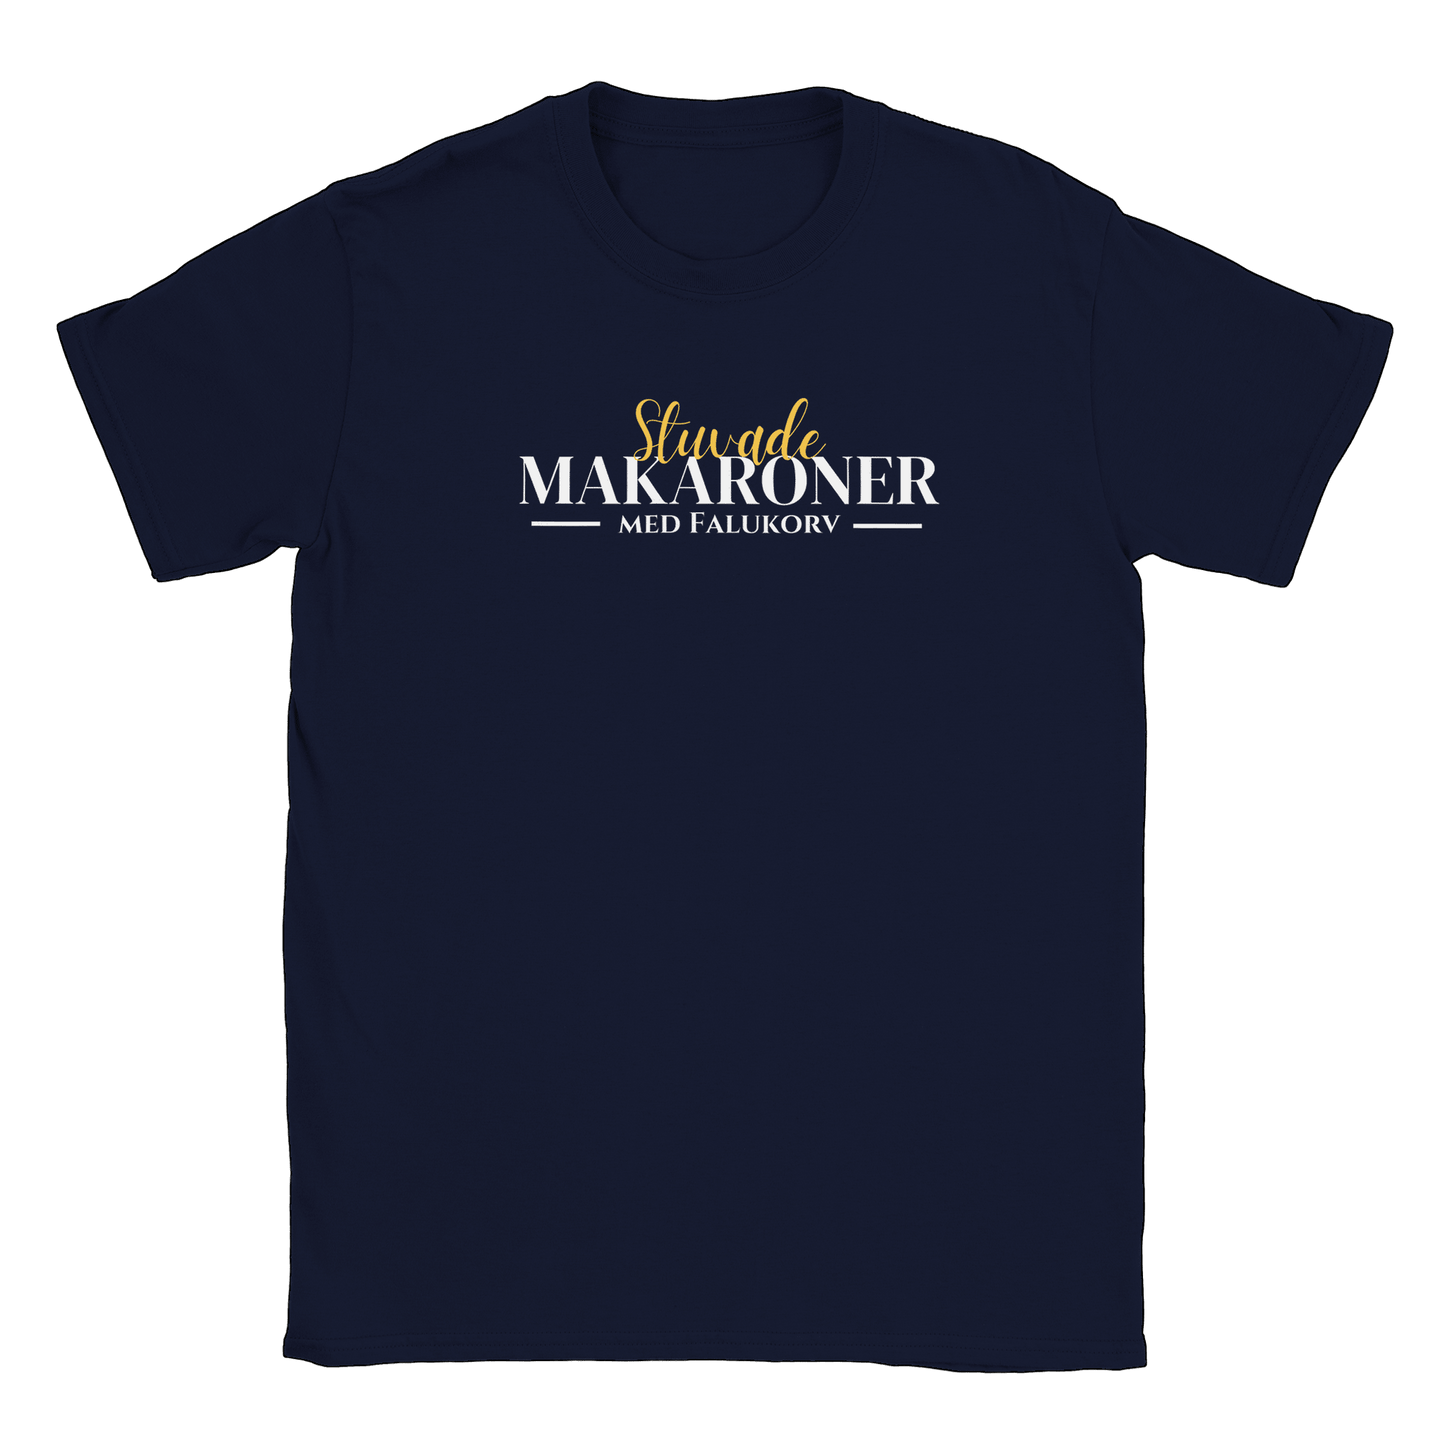 Stuvade makaroner med falukorv - T-shirt Navy